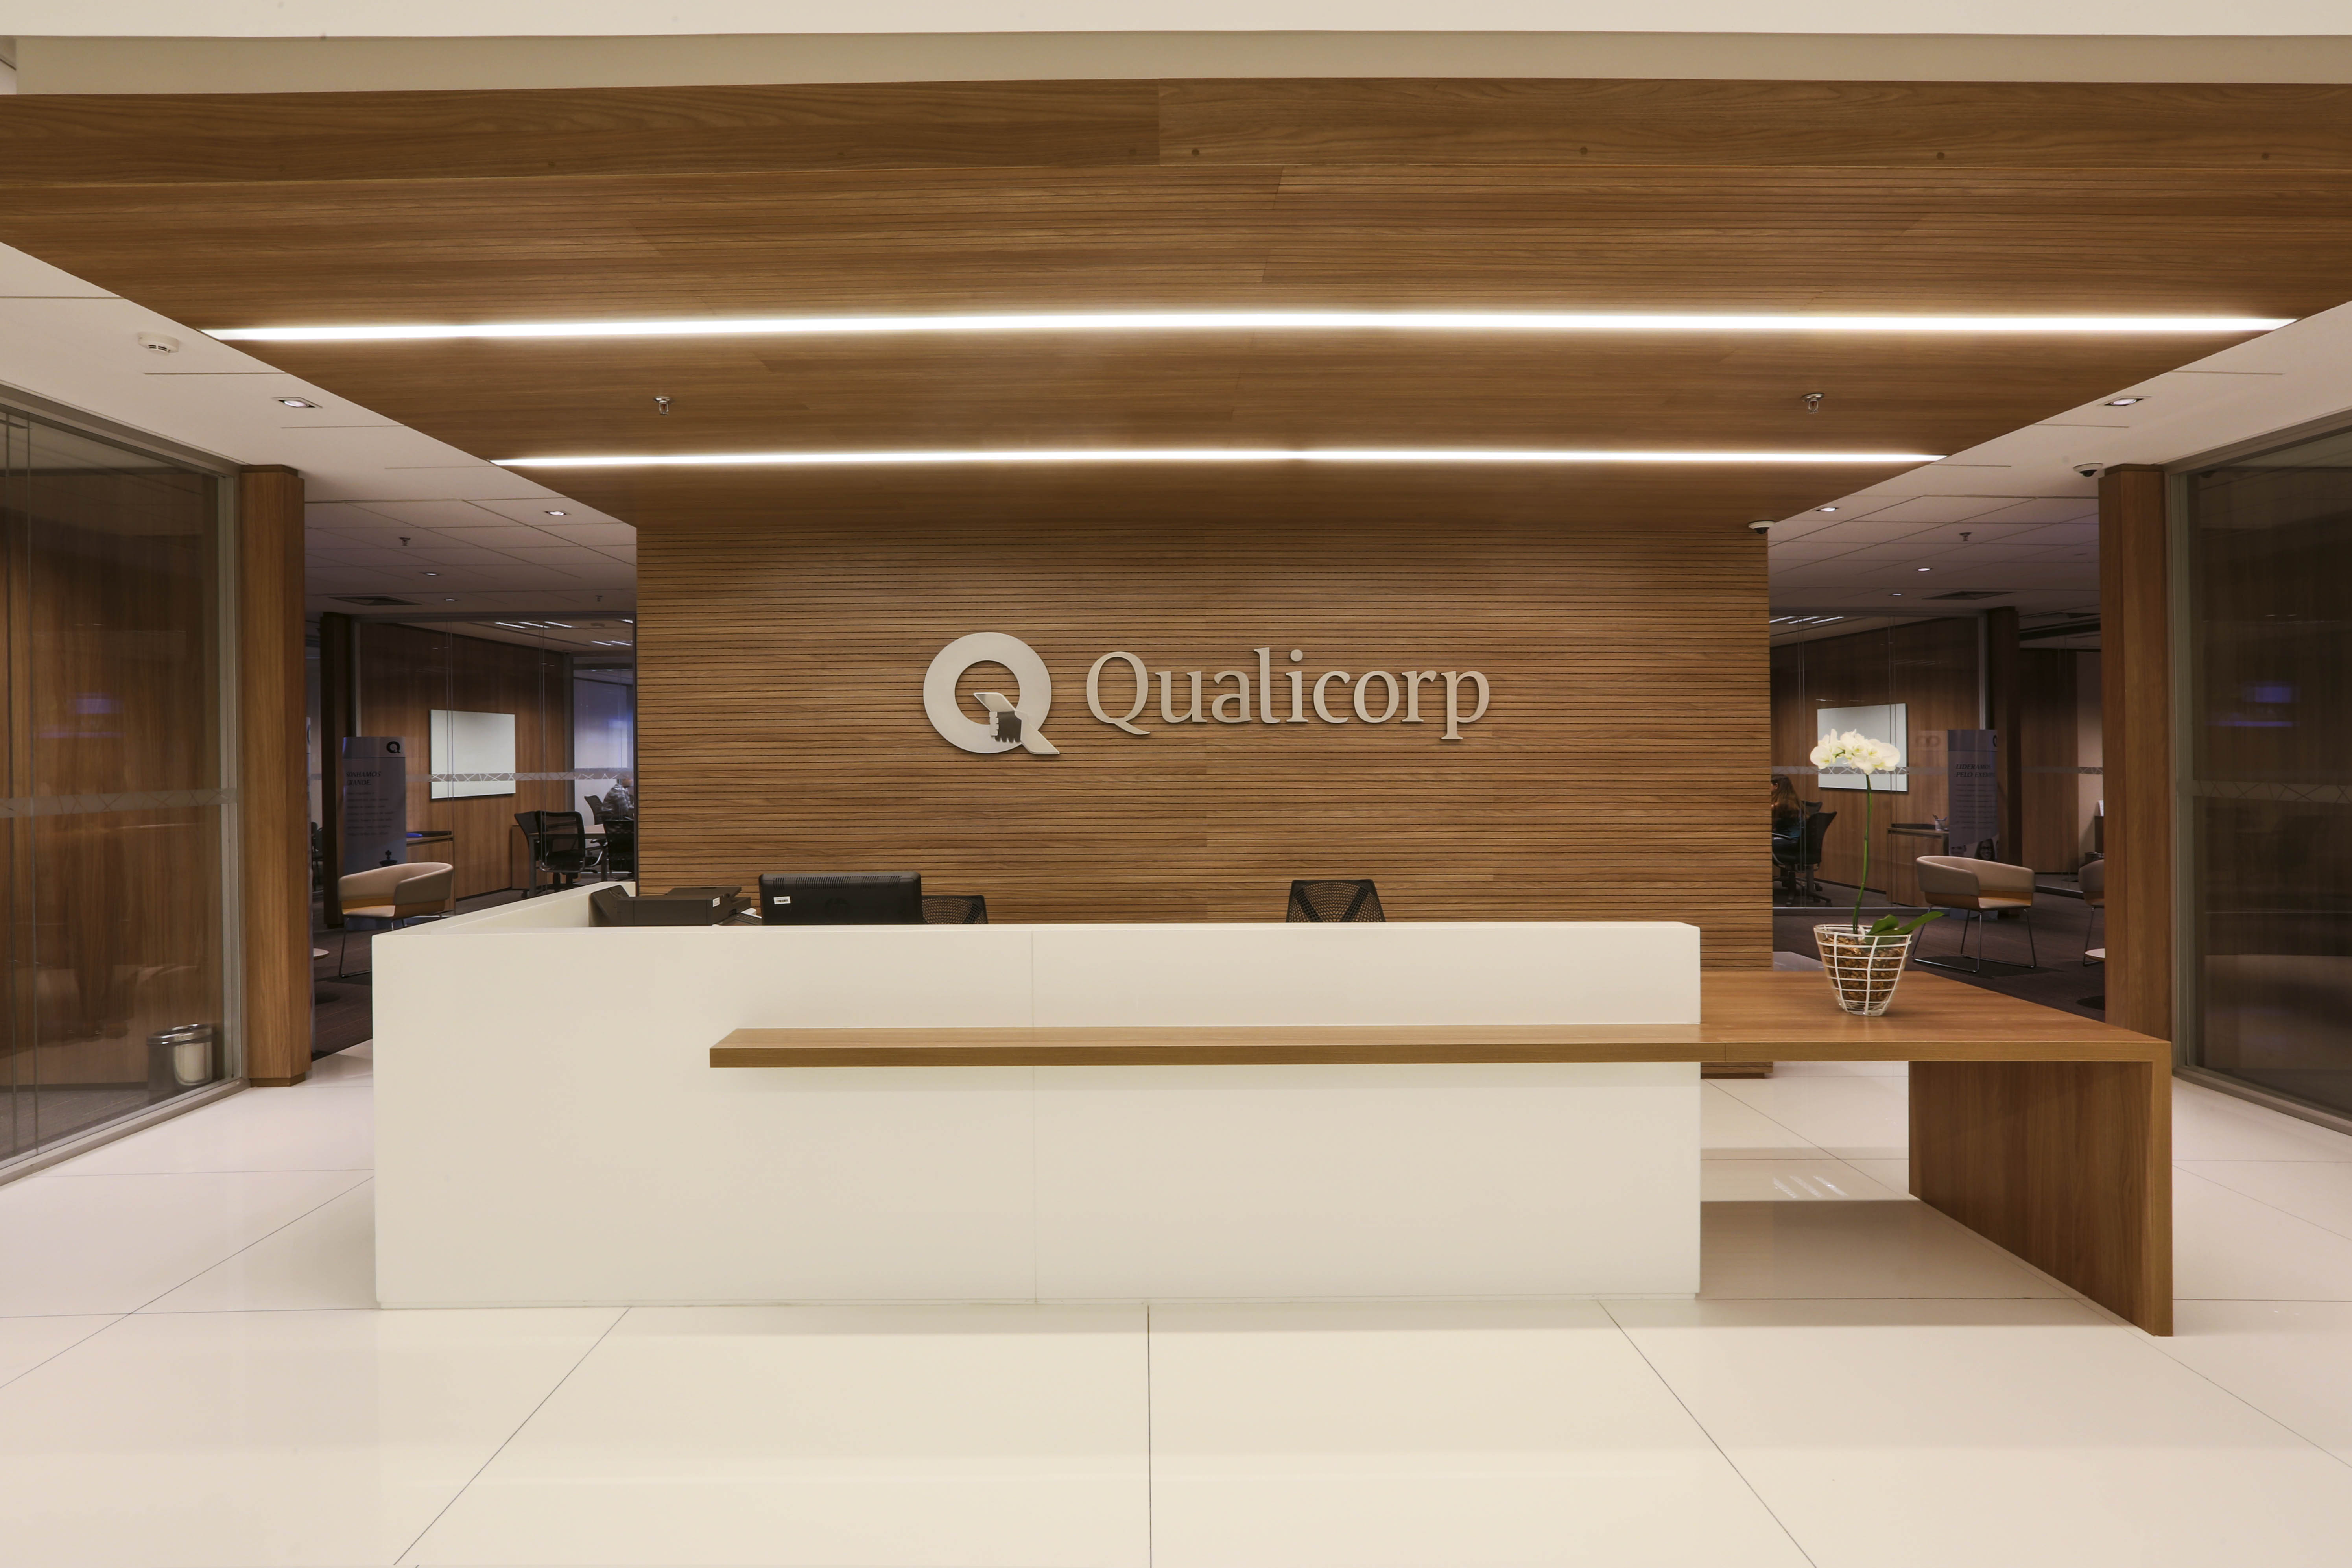 Qualicorp Headquarters